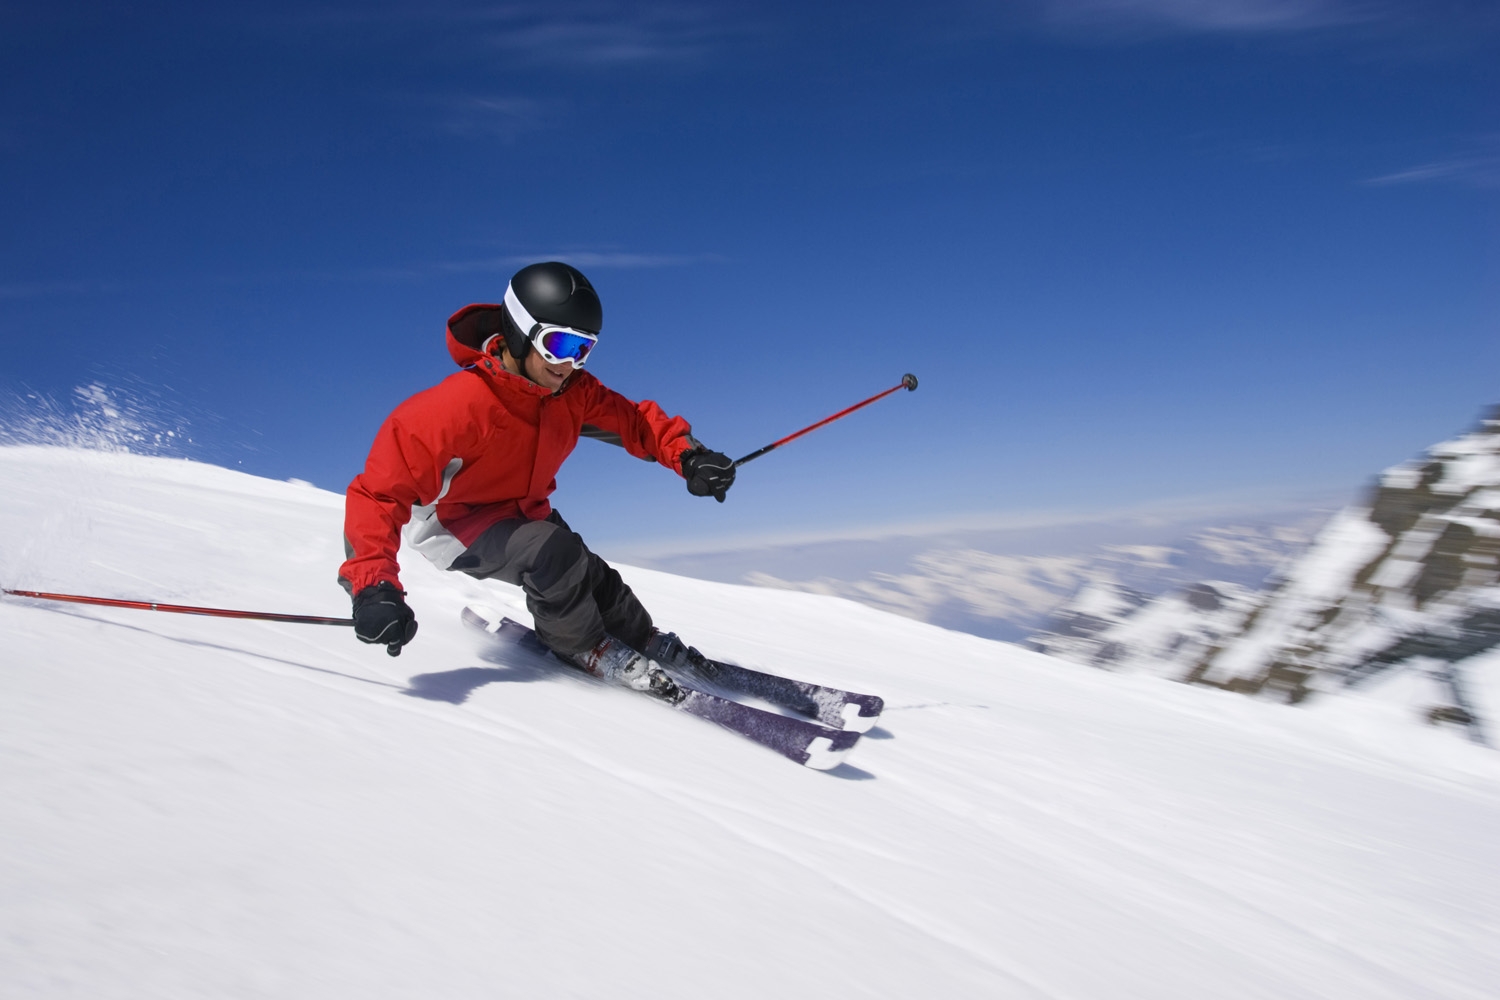 Gut ein Viertel der Deutschen (26 Prozent) übt eine Wintersportart aus. Das ergab eine repräsentative forsa-Umfrage im Auftrag von CosmosDirekt. Am häufigsten fahren die Befragten Ski (68 Prozent). Jeder vierte Wintersportfreund (25 Prozent) betreibt Langlauf, jeder fünfte (20 Prozent) das Schlittschuhlaufen.